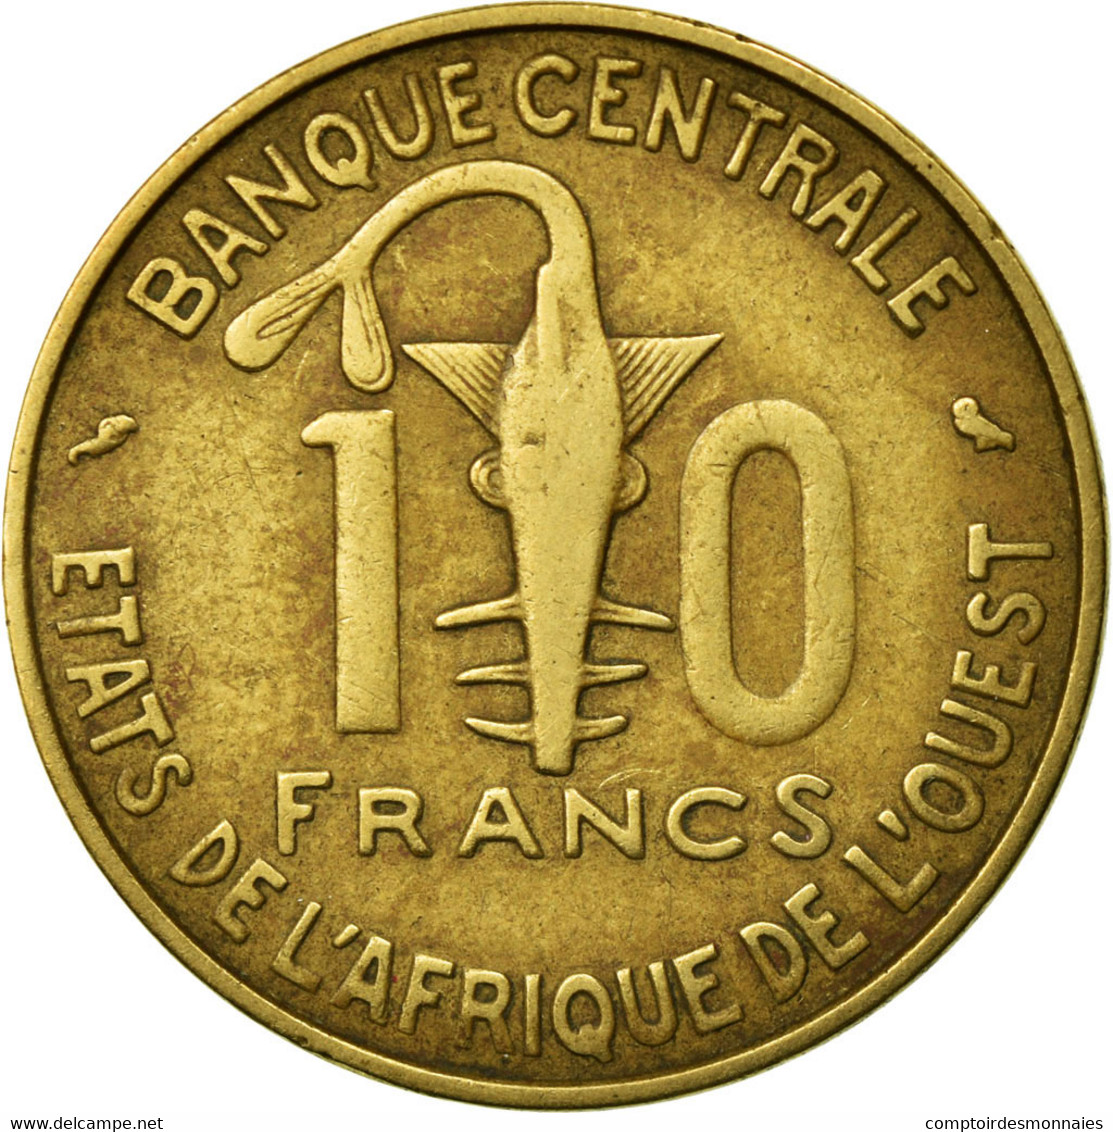 Monnaie, West African States, 10 Francs, 1974, Paris, TB+ - Costa De Marfil